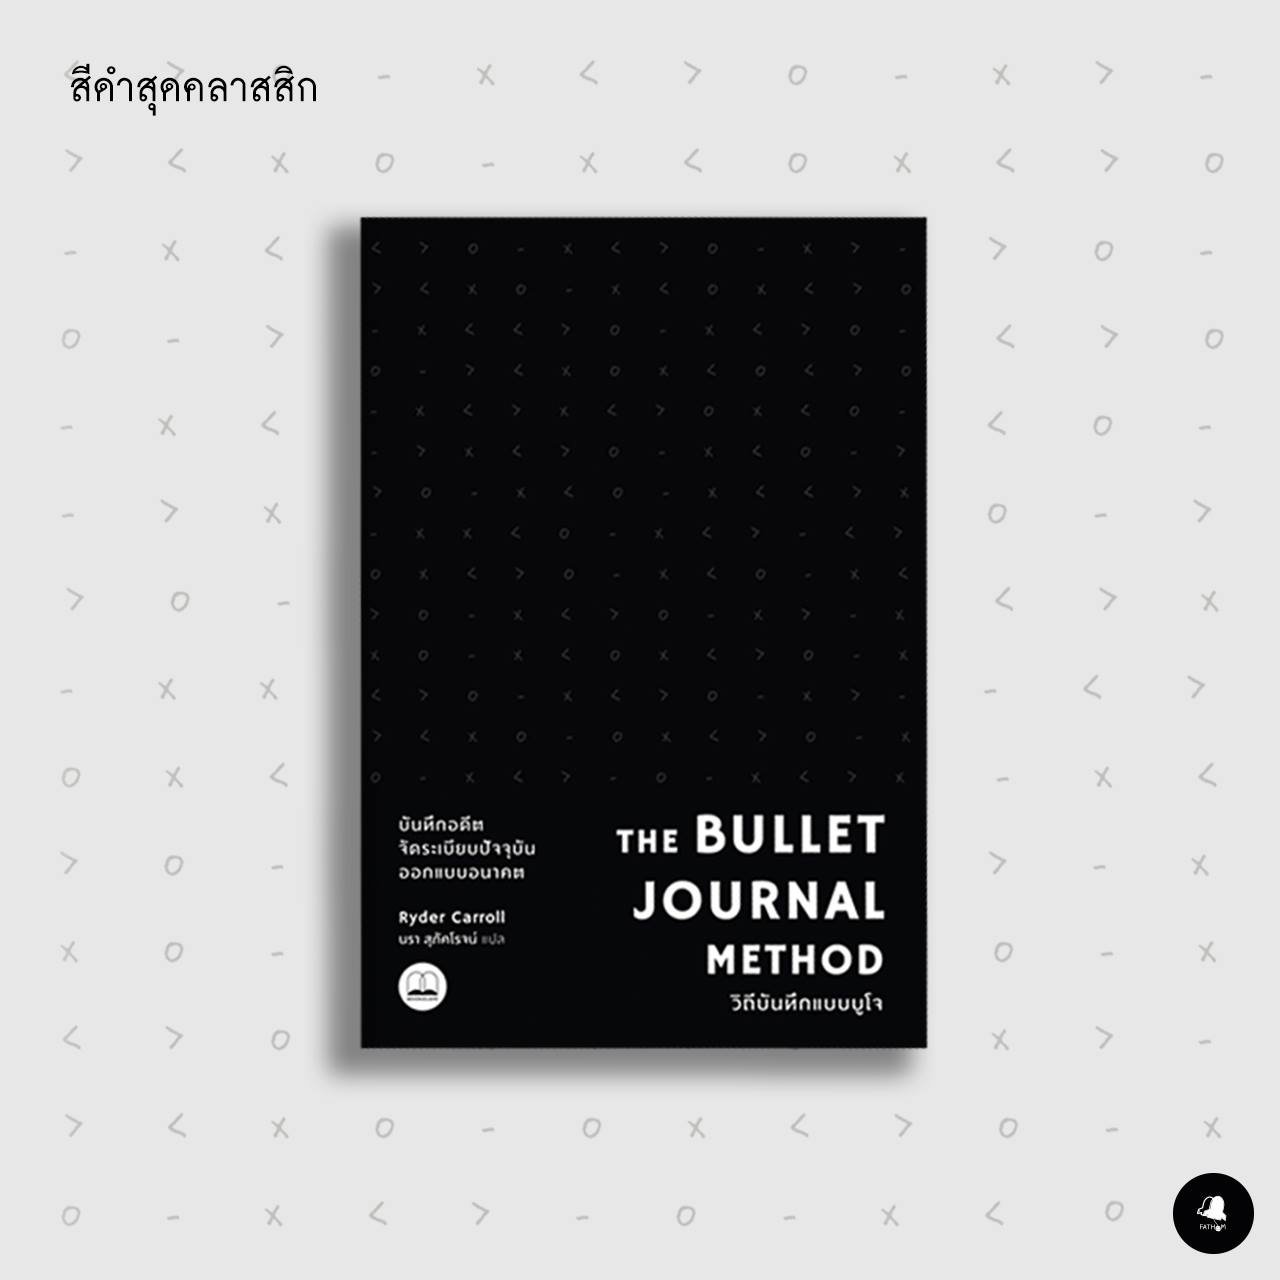 วิถีบันทึกแบบบูโจ (สีดำ) The Bullet Journal Method / Ryder Carroll / นรา สุภัคโรจน์ / Bookscape